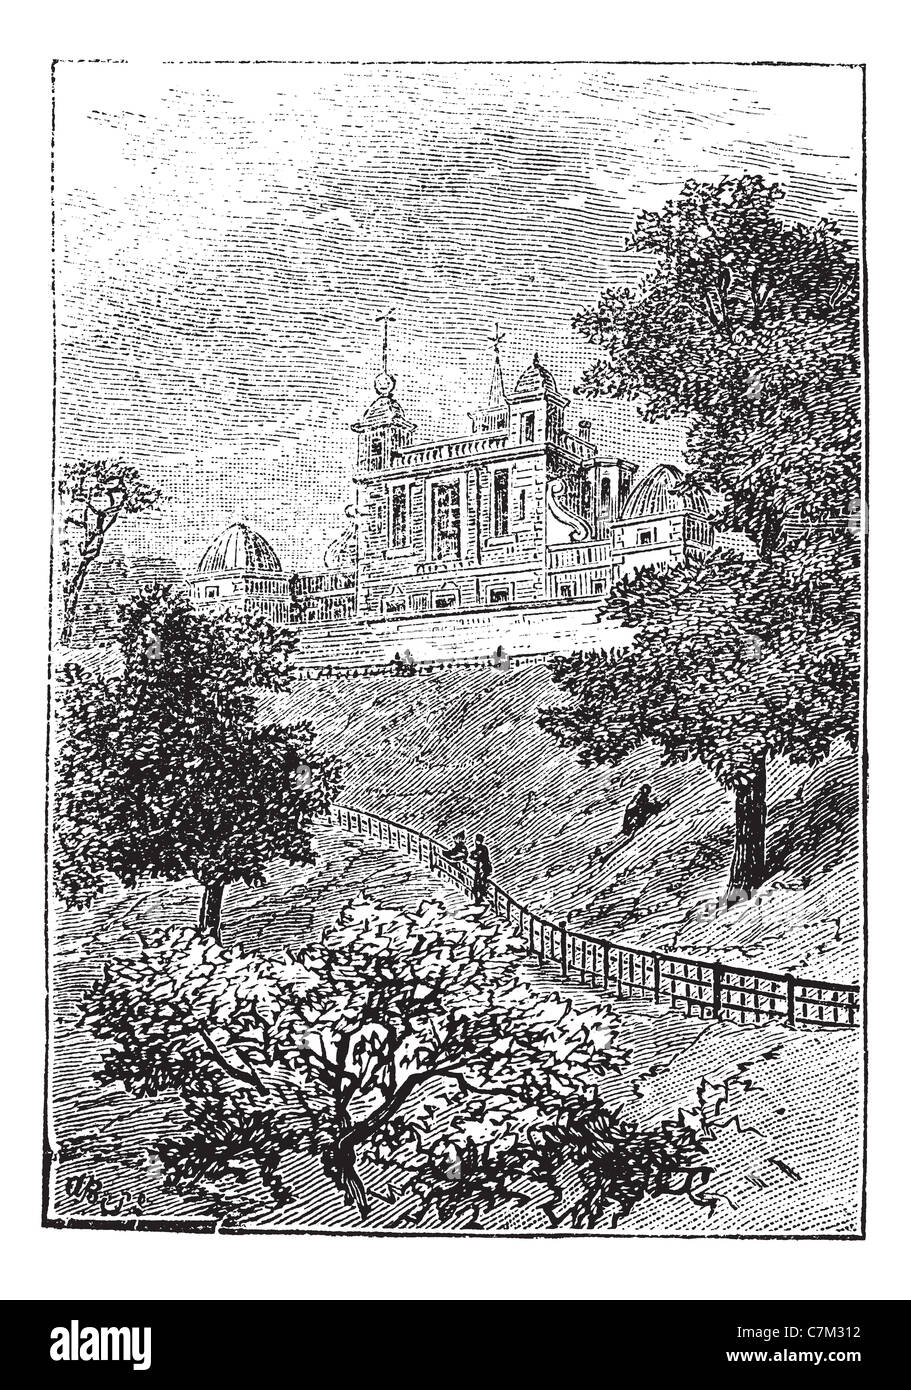 Observatoire Royal de Greenwich, Londres, Angleterre, Royaume-Uni, vintage engraved illustration. Encyclopédie Trousset (1886 - 1891). Banque D'Images